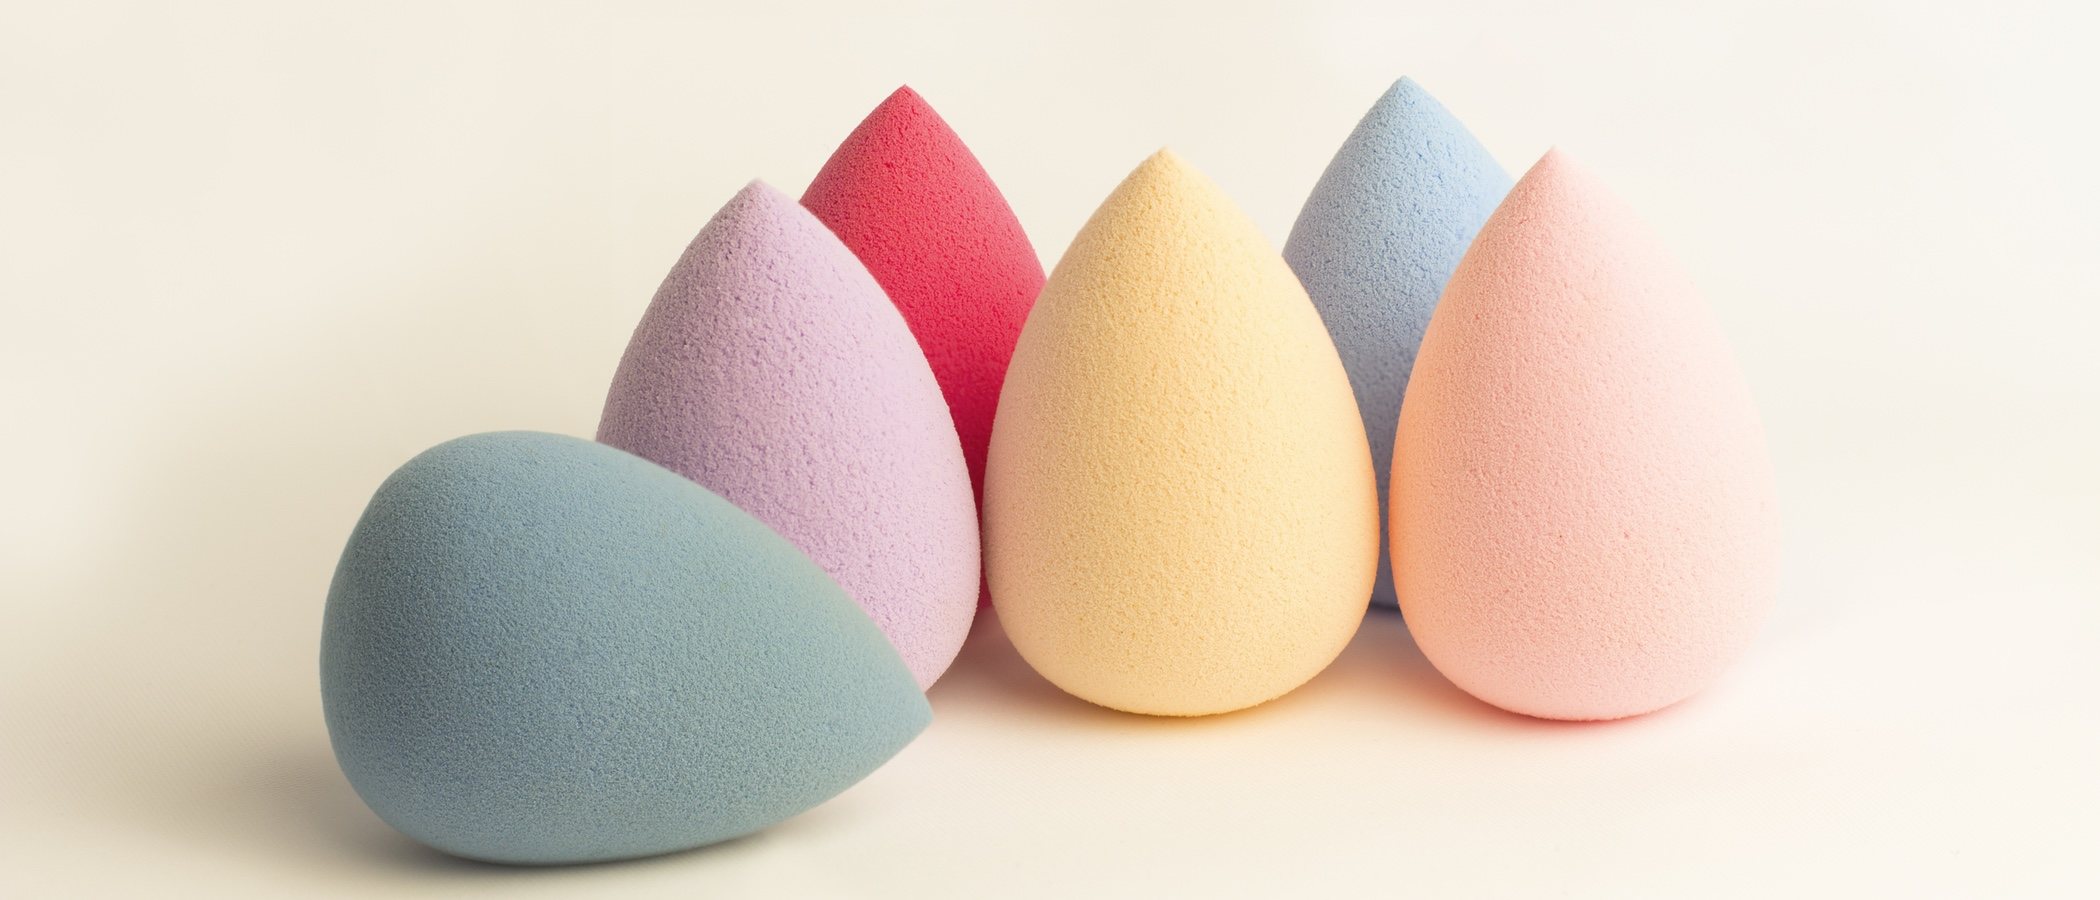 Beauty blender: qué es y cómo usar esta esponja de maquillaje